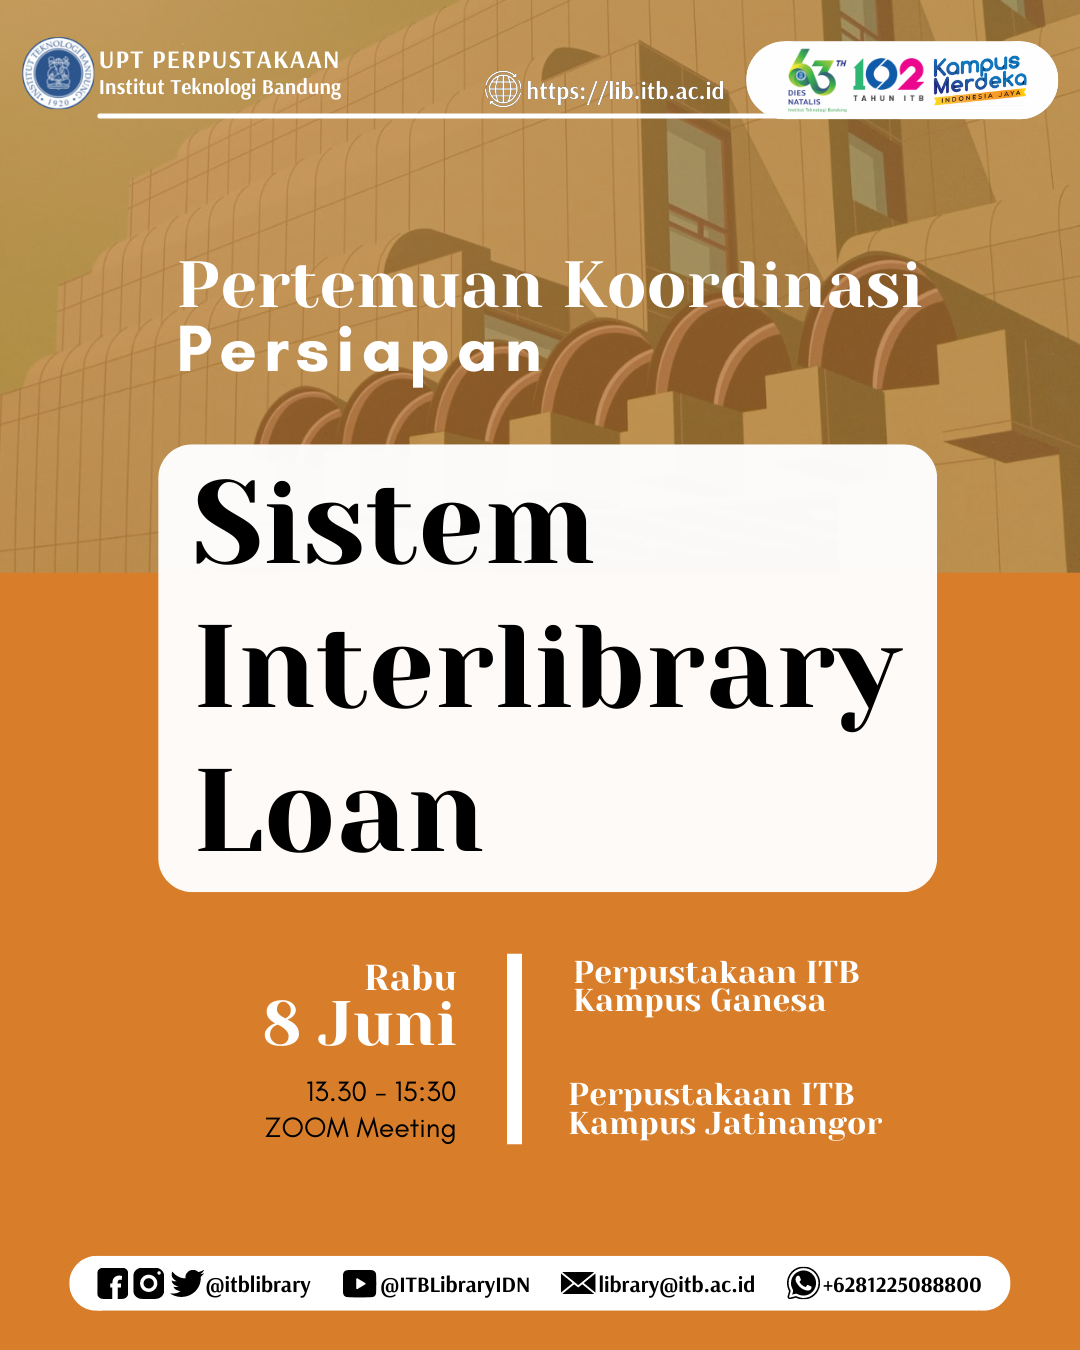 Pertemuan Koordinasi Persiapan Sistem Interlibrary Loan